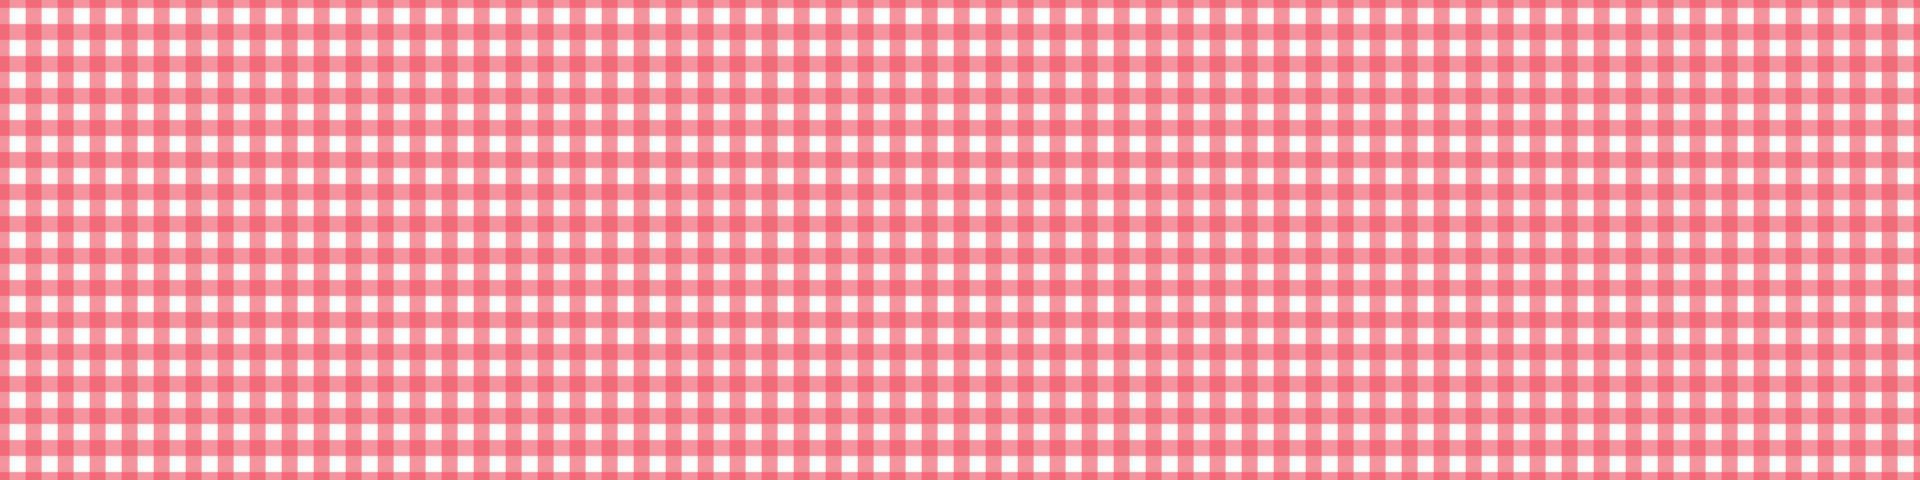 motif vichy pique-nique rouge. nappe pour table. texture carrée pour vichy ou tissu. illustration vectorielle vecteur